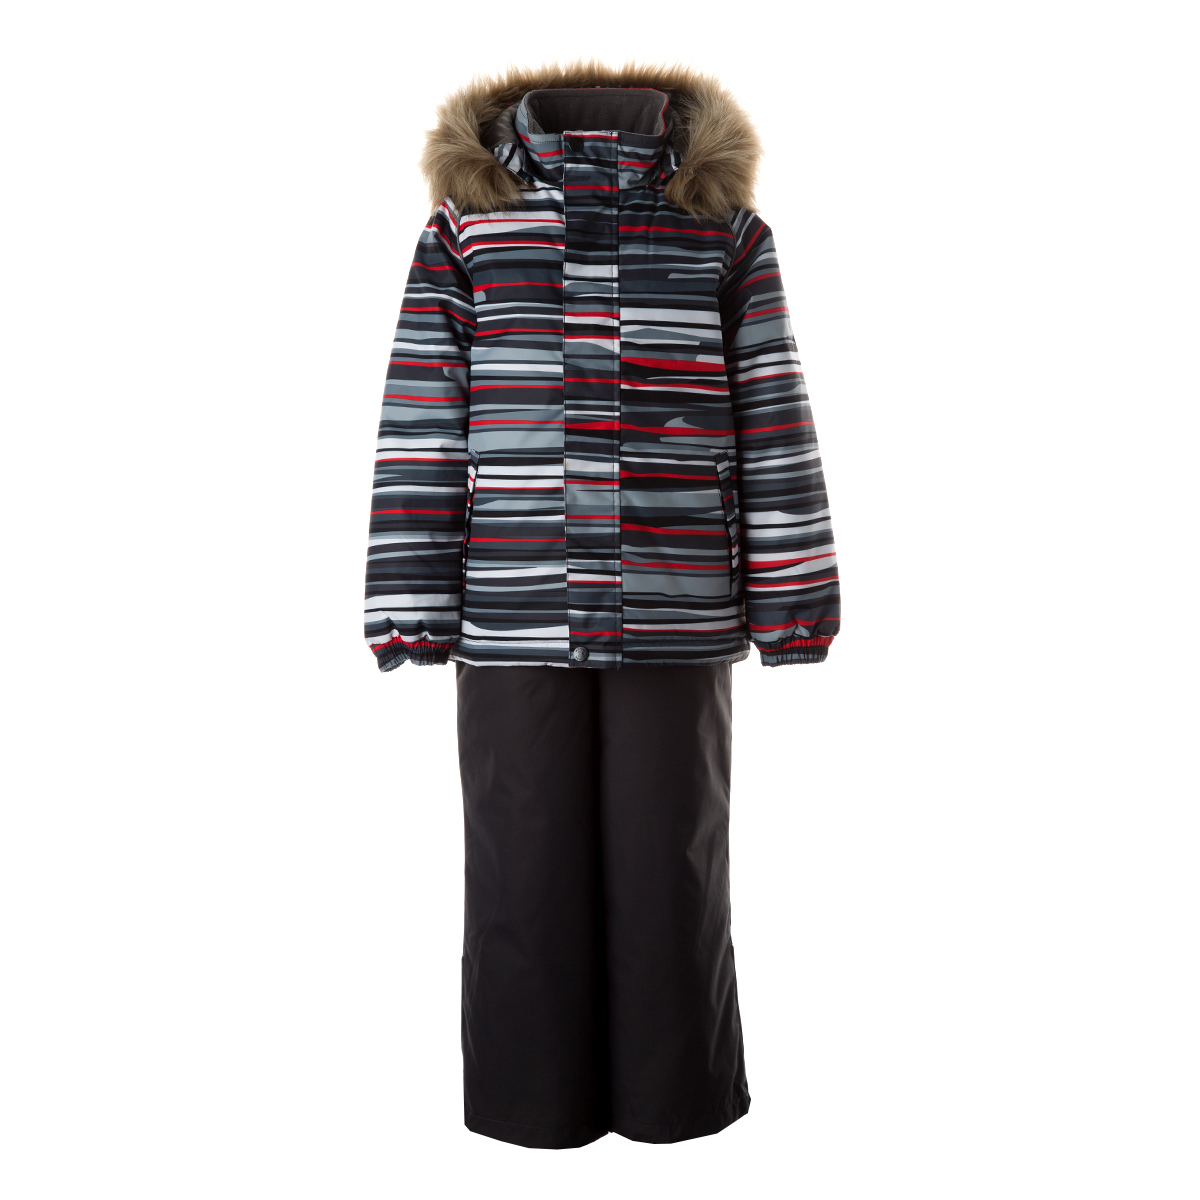 Комплект верхней одежды детский Huppa WINTER цв. темно-серая полоска/темно-серый р. 134